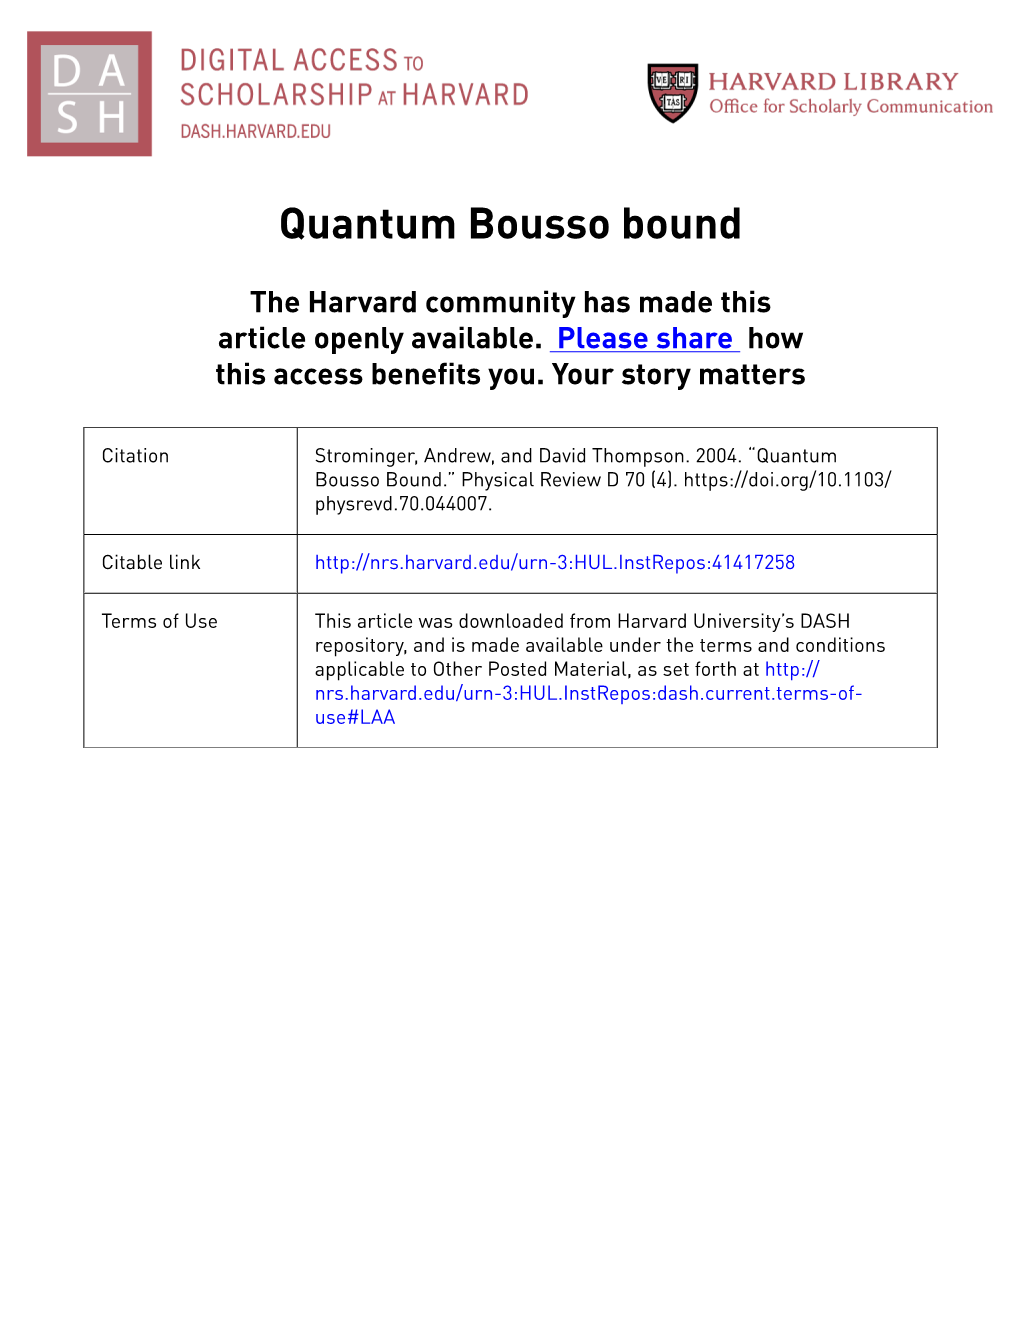 Quantum Bousso Bound